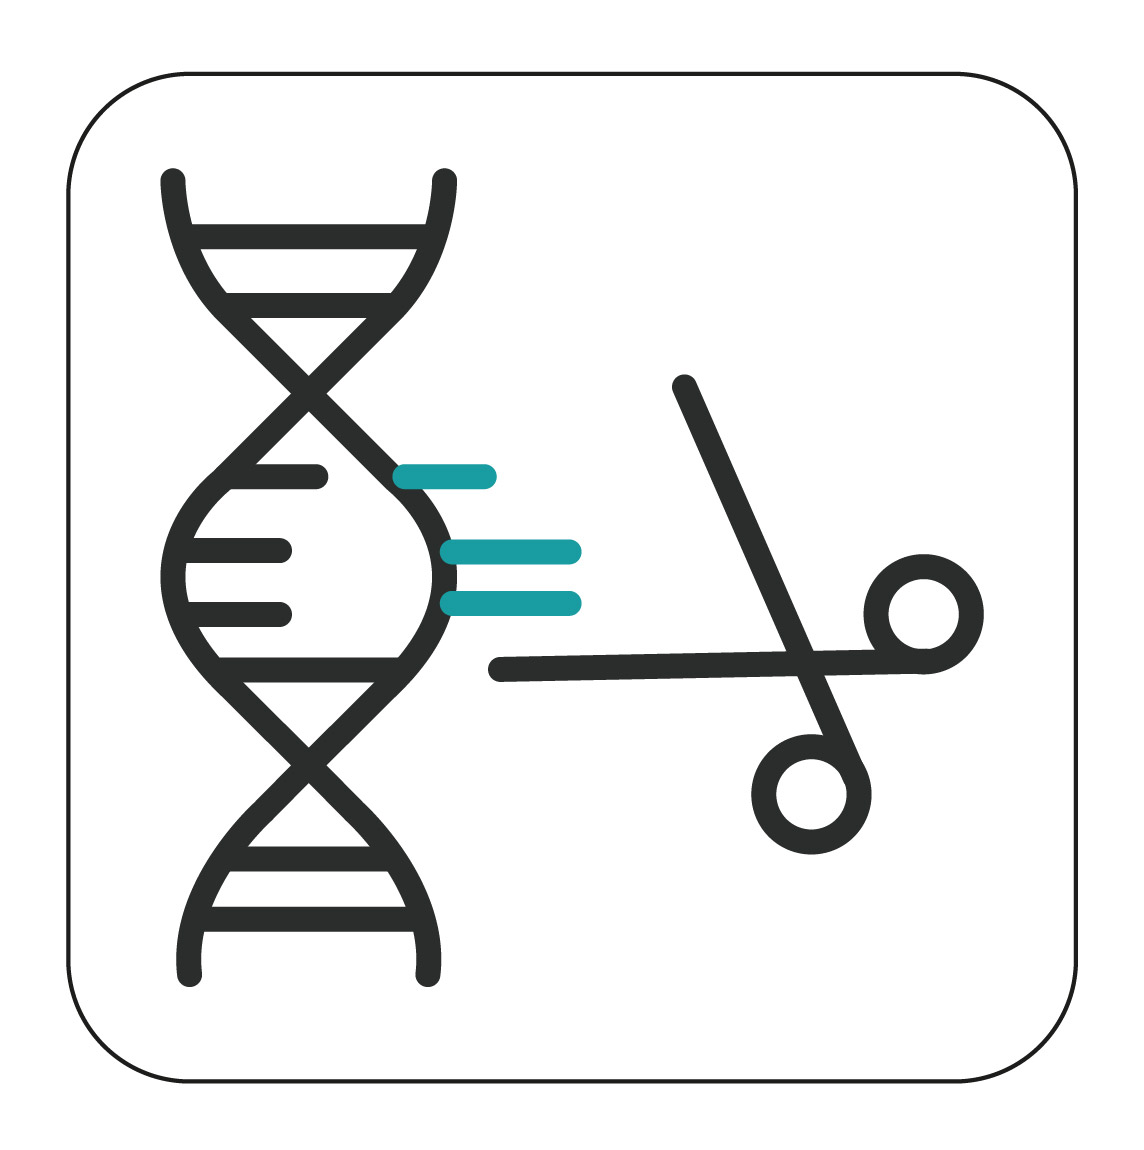 CRISPR-based gene drives